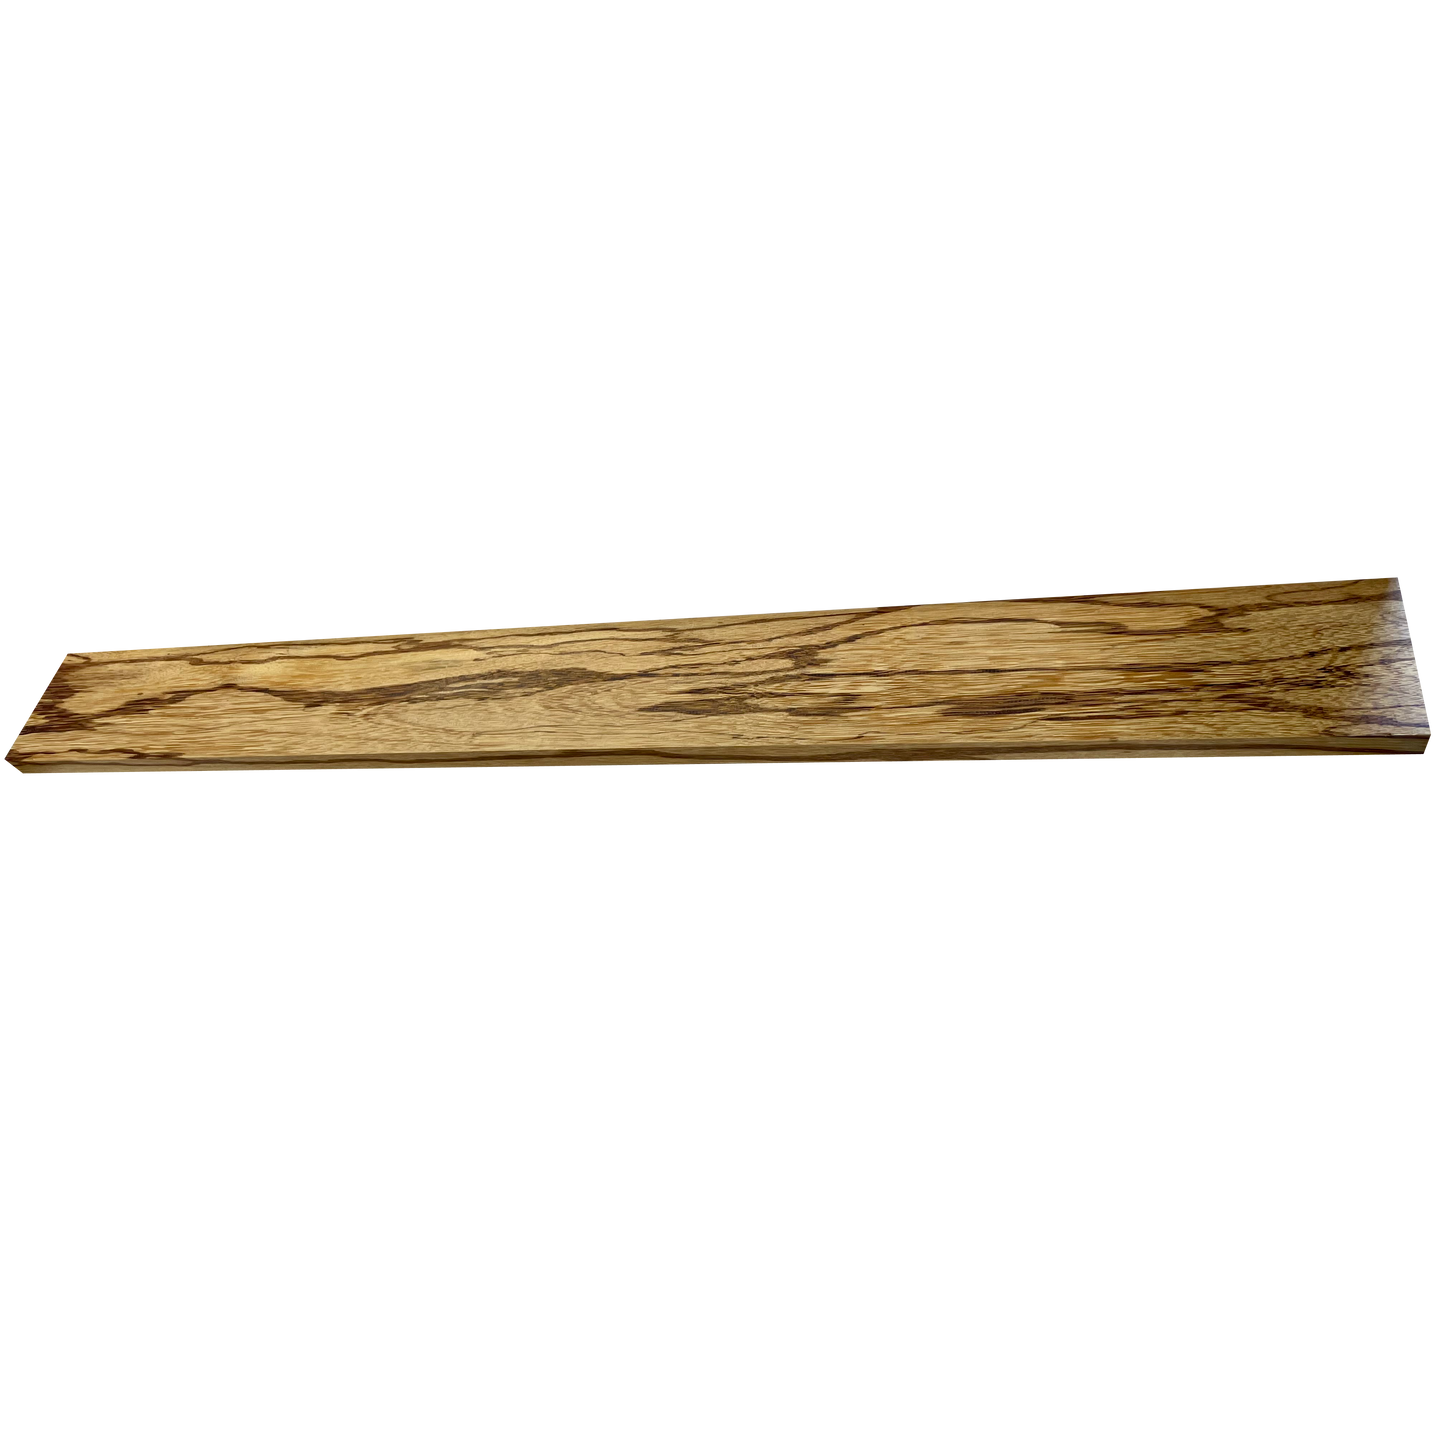 Marblewood - Dimensional Lumber